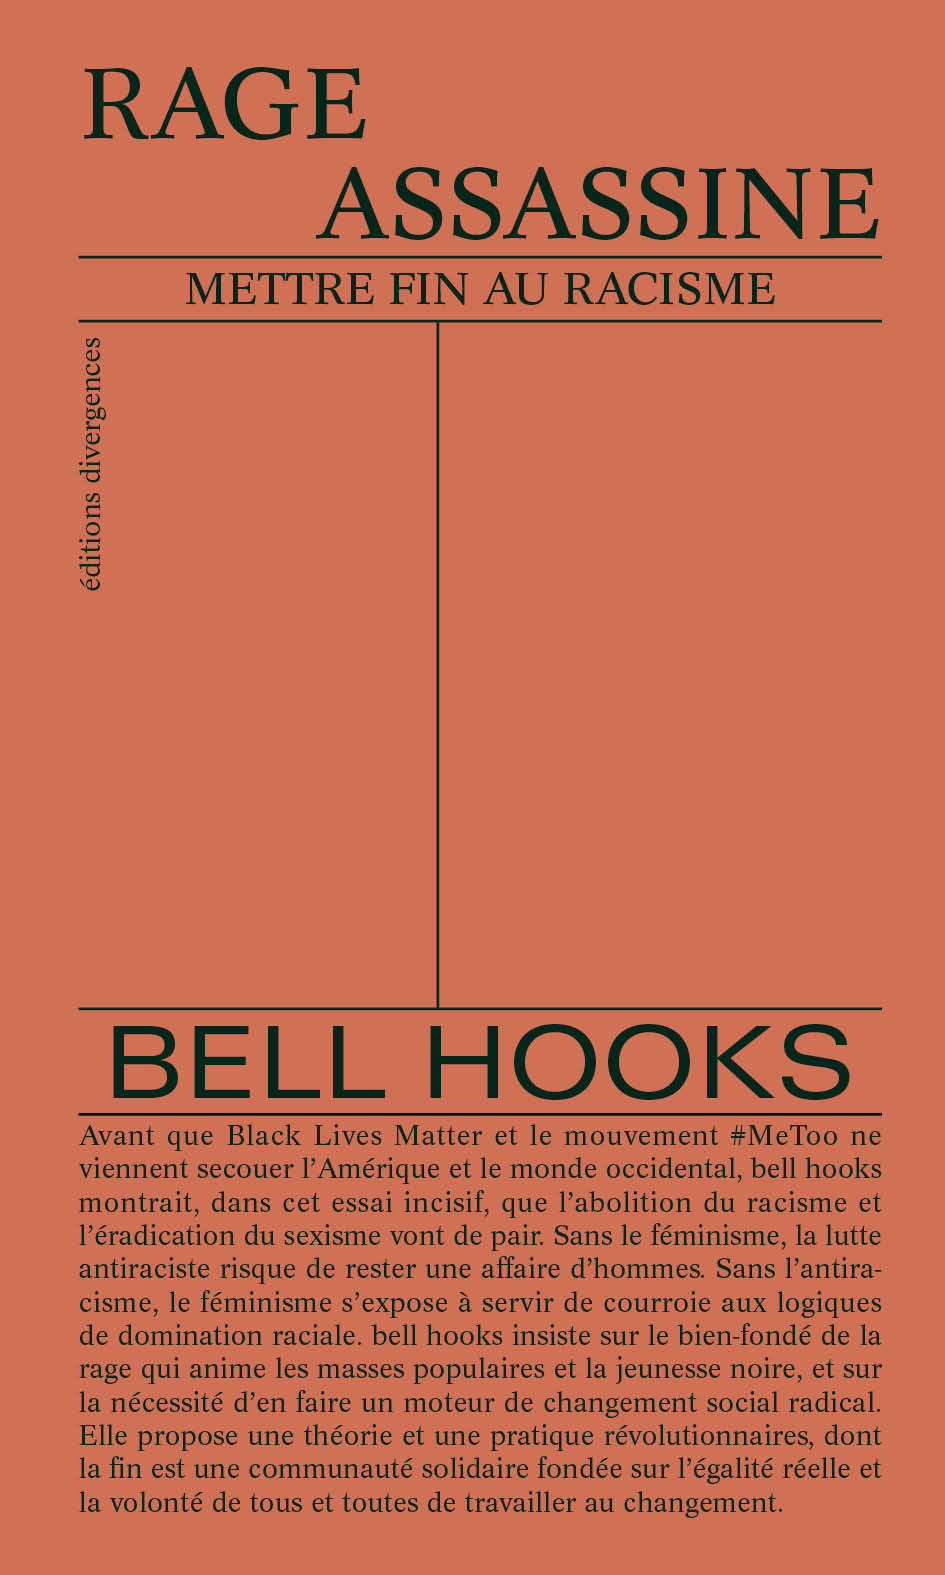 bell hooks  - Rage Assassine - Mettre Fin au Rasisme